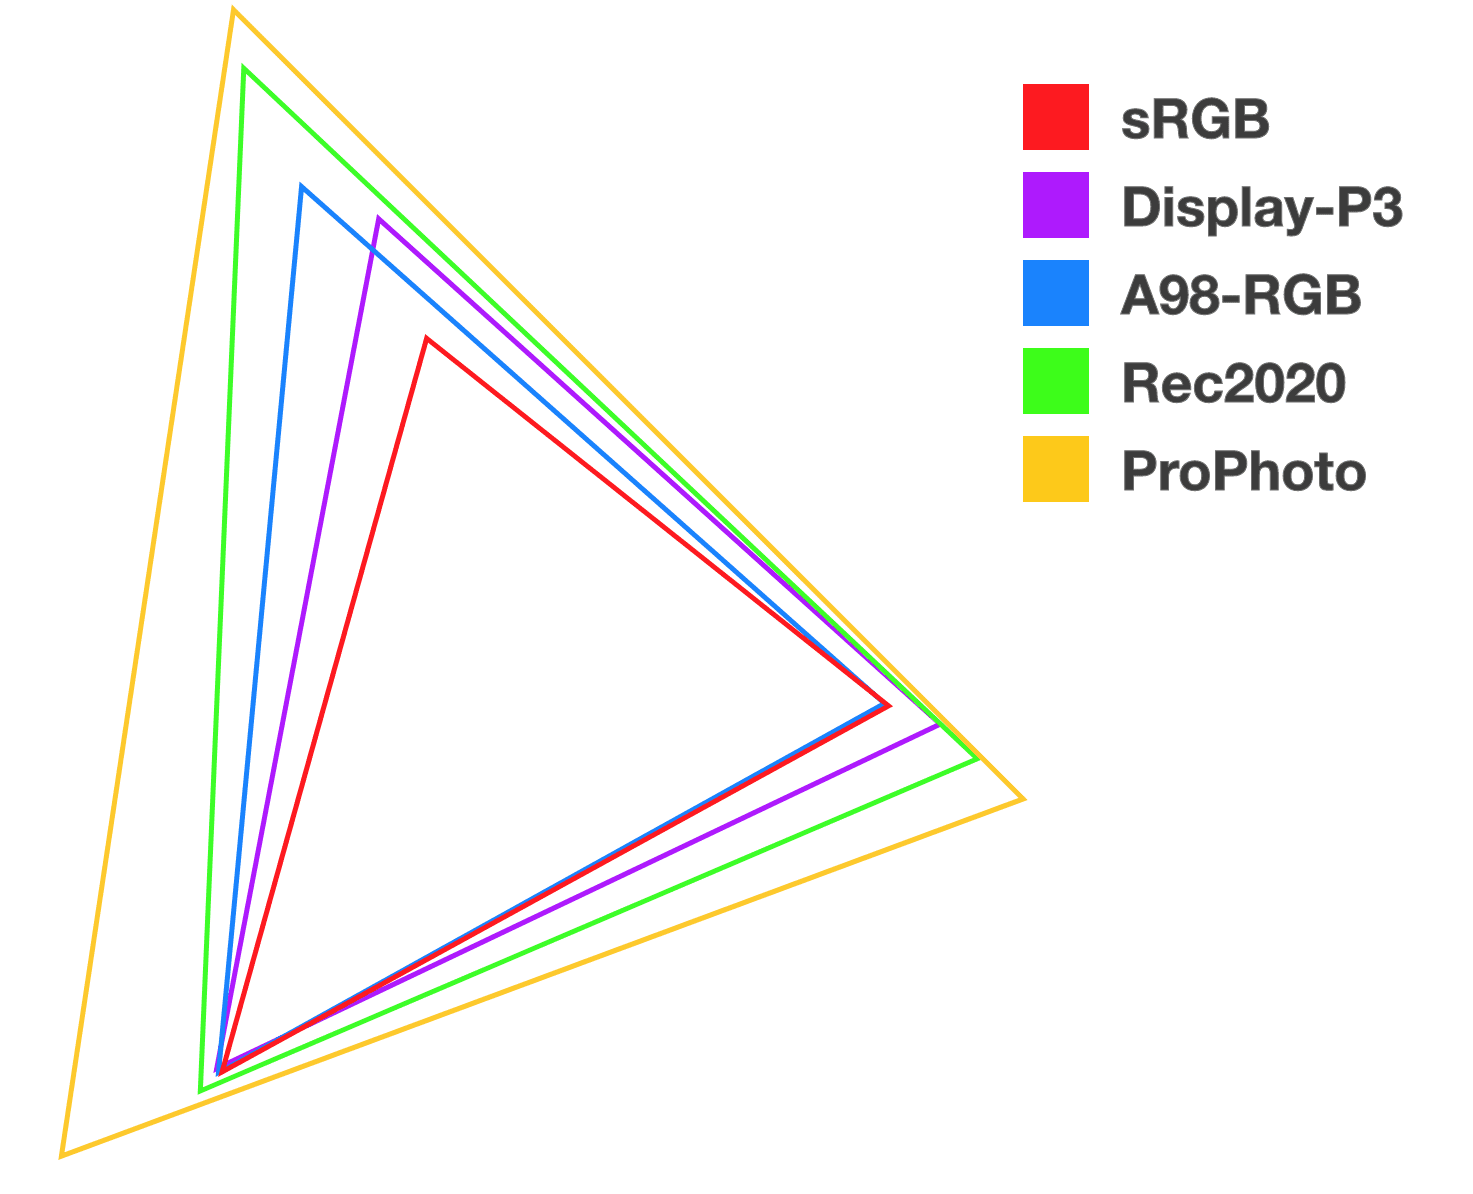 خمسة مثلثات مكدسة ذات ألوان مختلفة للمساعدة في توضيح العلاقة وحجم كل مساحة لونية جديدة.